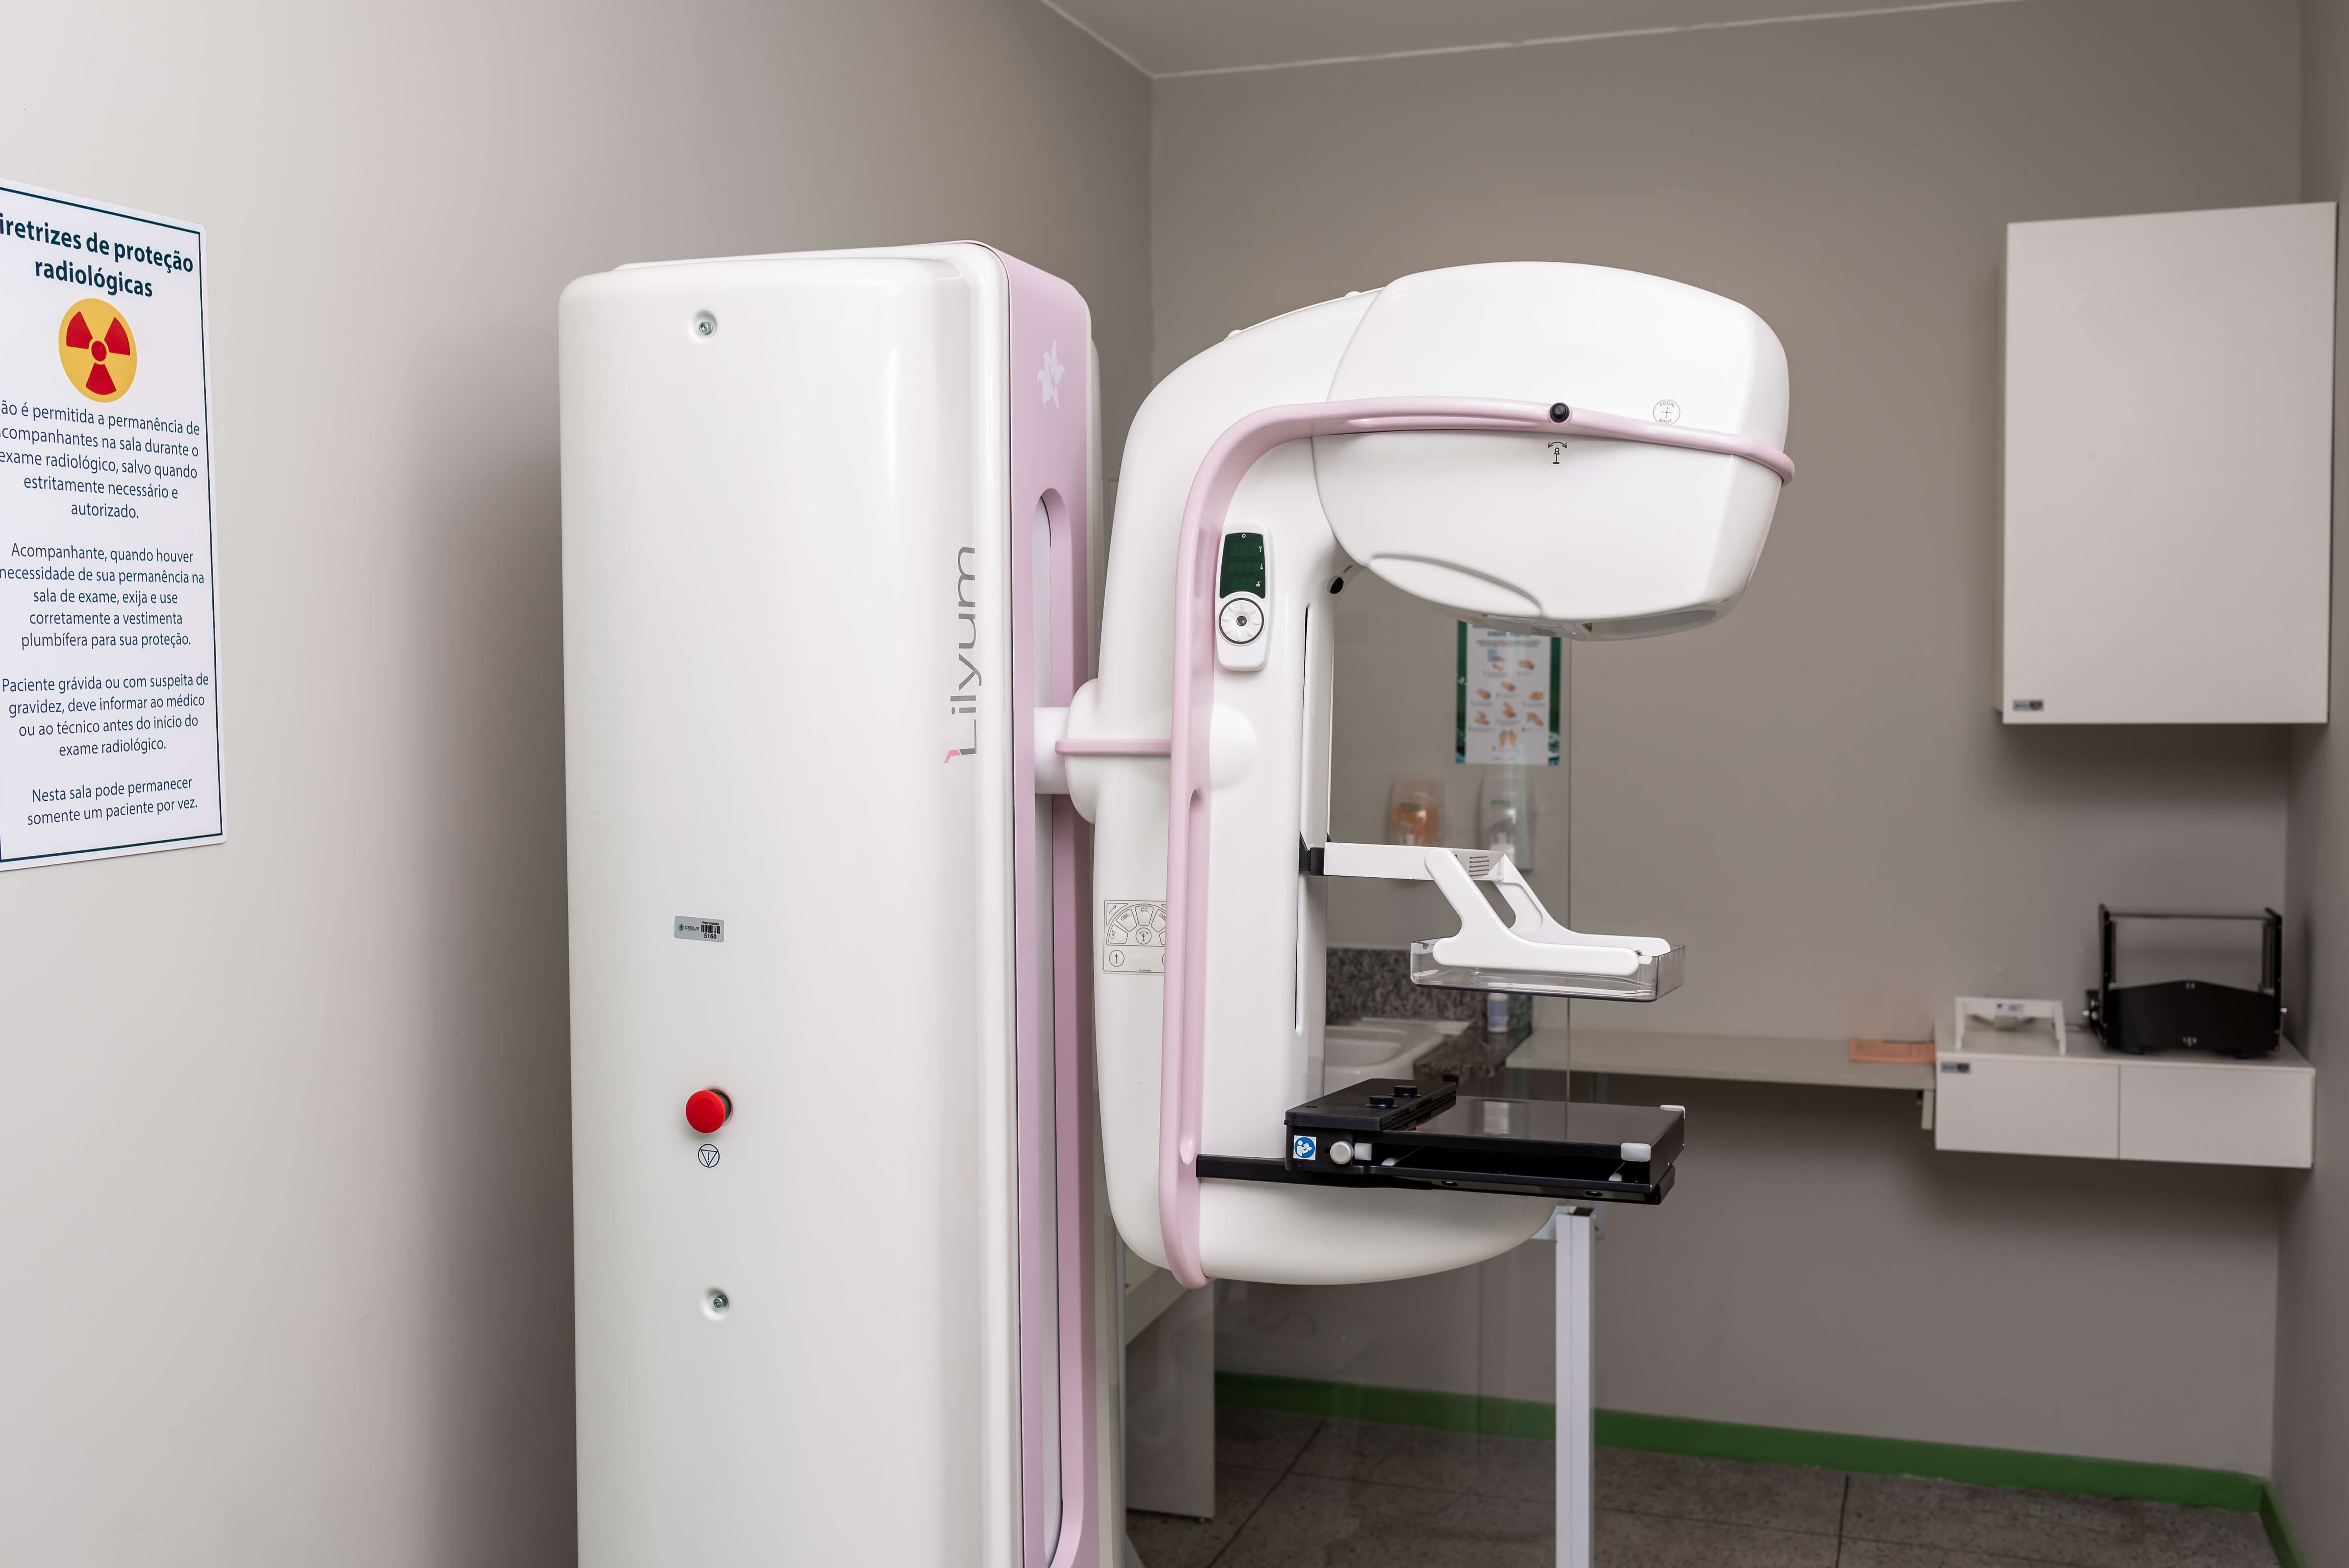 Exames de Mamografia – Tatuapé [NEW] – Cedusp – Exames Guarulhos